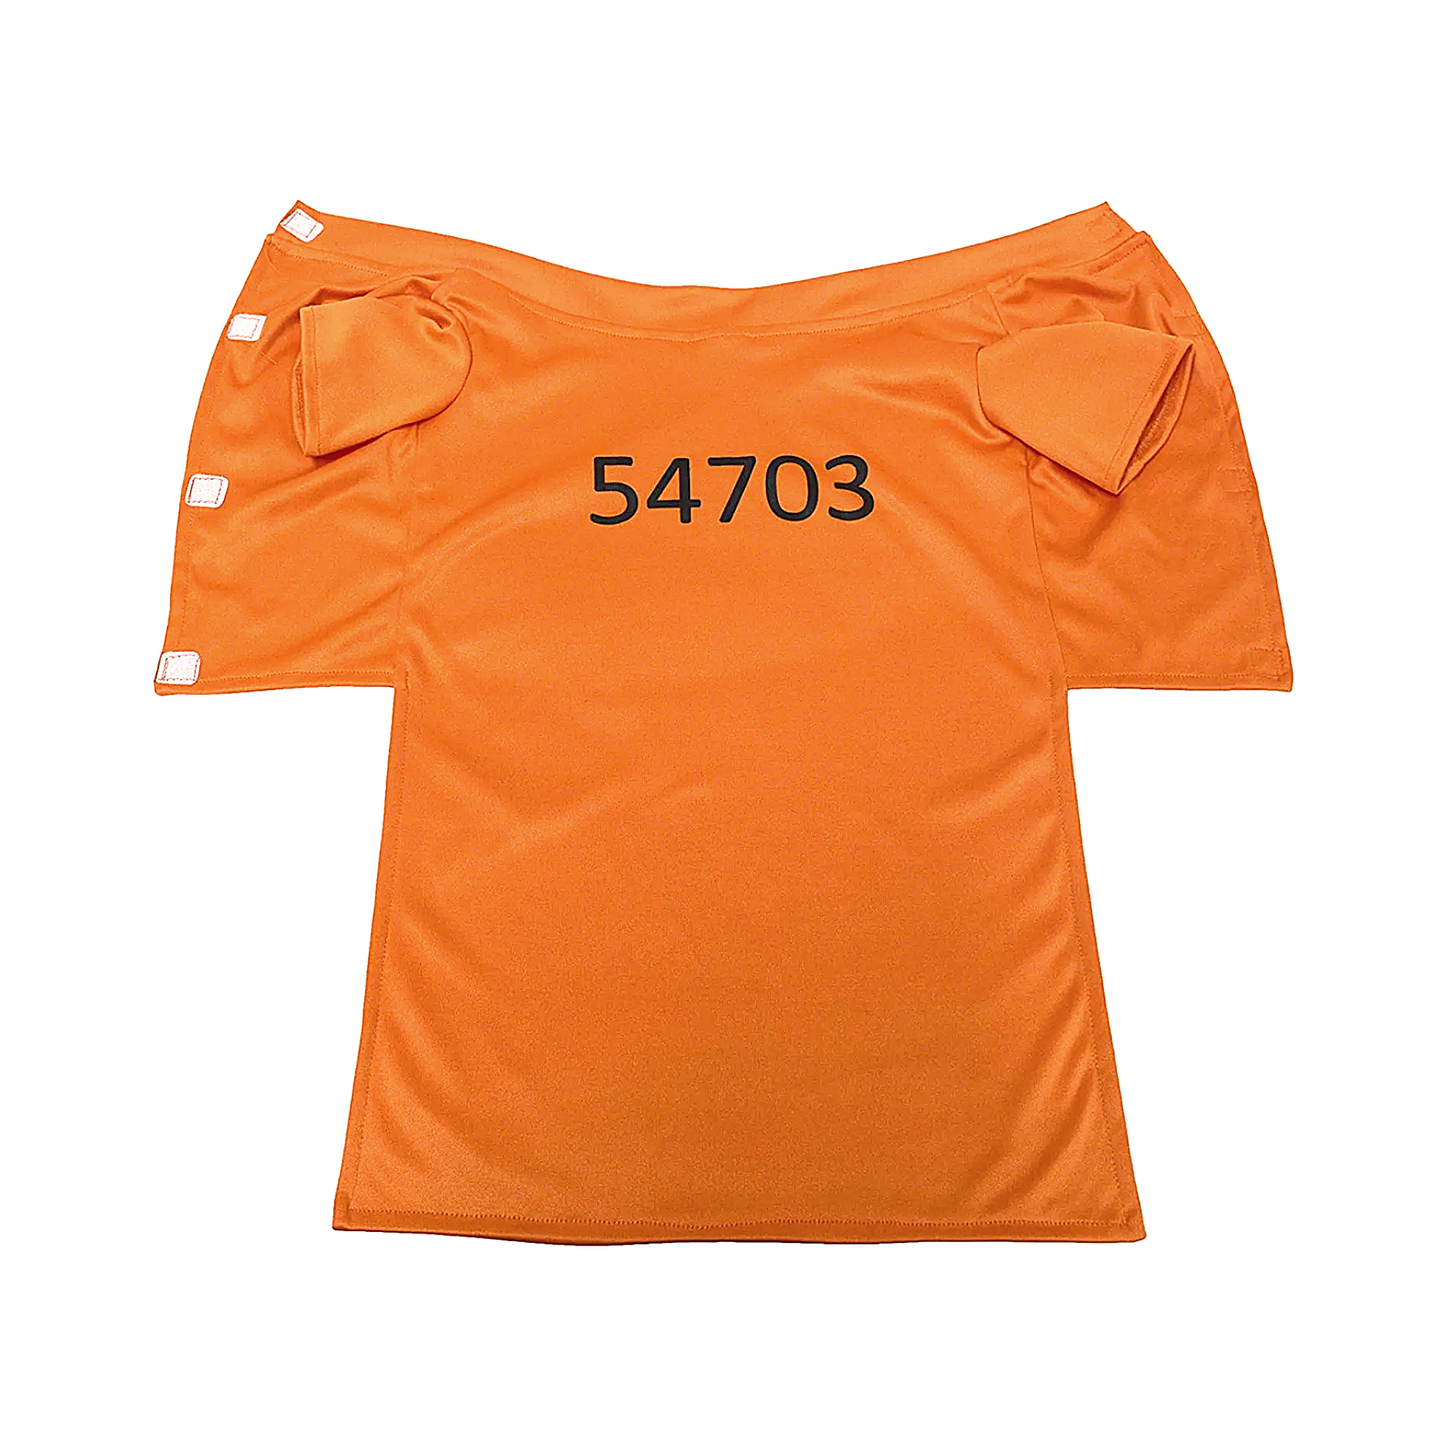 Midlee Orange Prisoner Costume